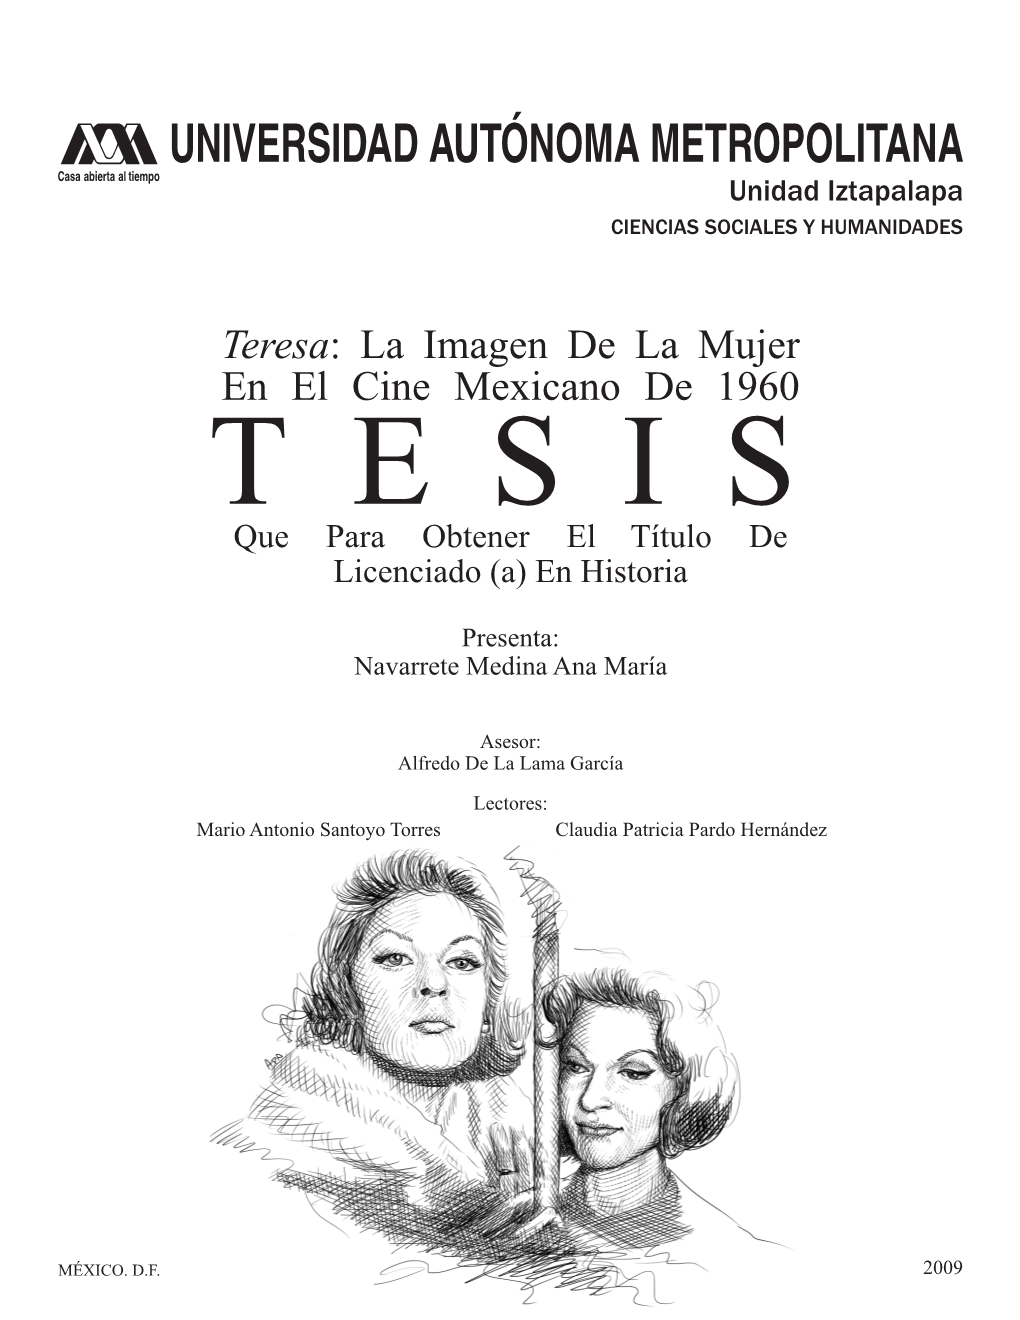 Teresa: La Imagen De La Mujer En El Cine Mexicano De 1960